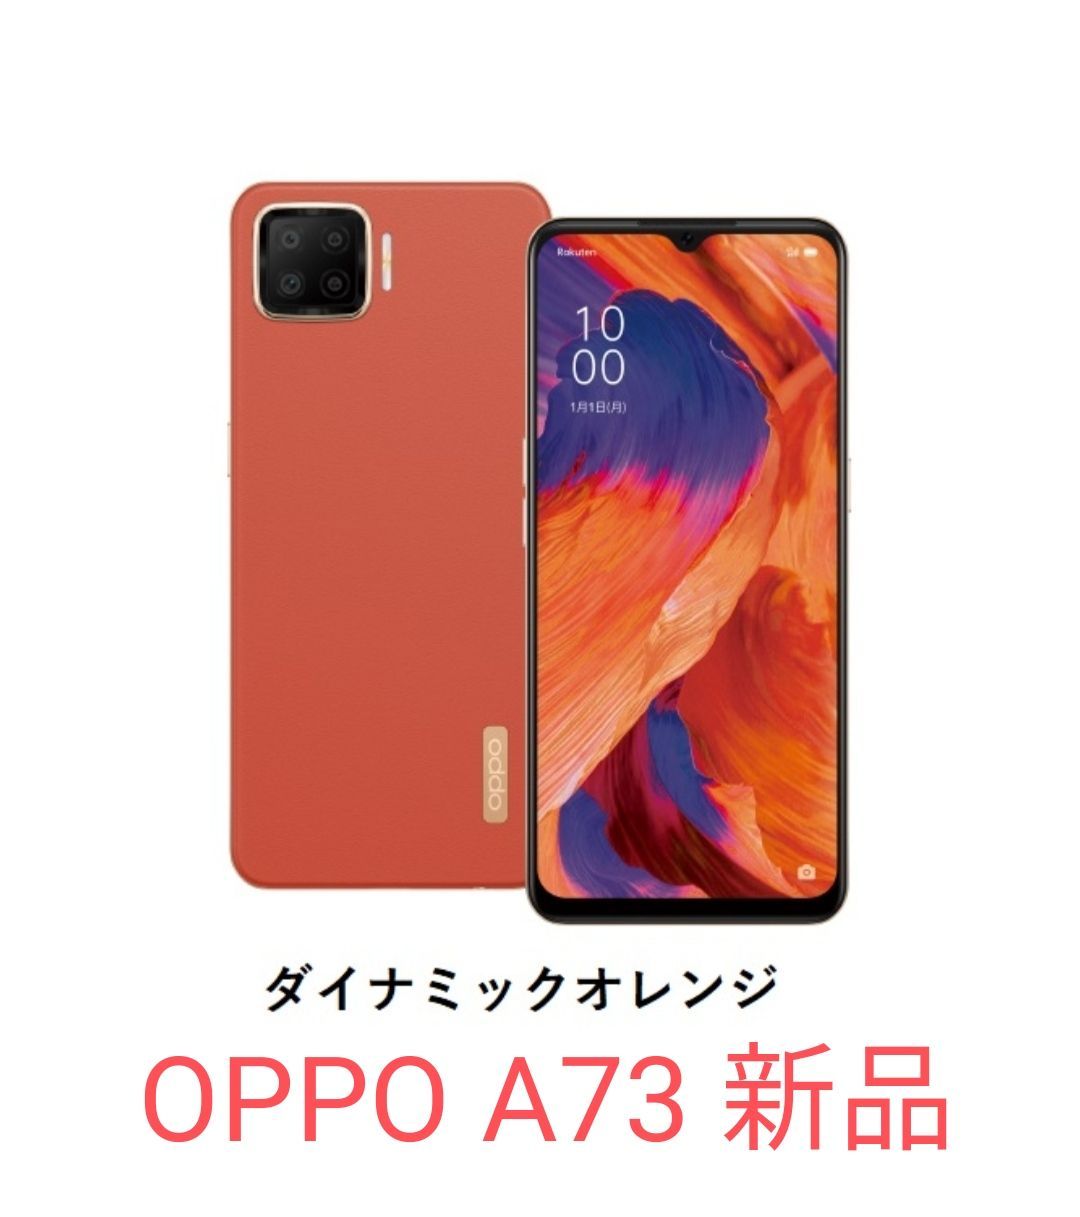 OPPO A73 楽天モバイル対応 simフリースマートフォン - スマートフォン/携帯電話